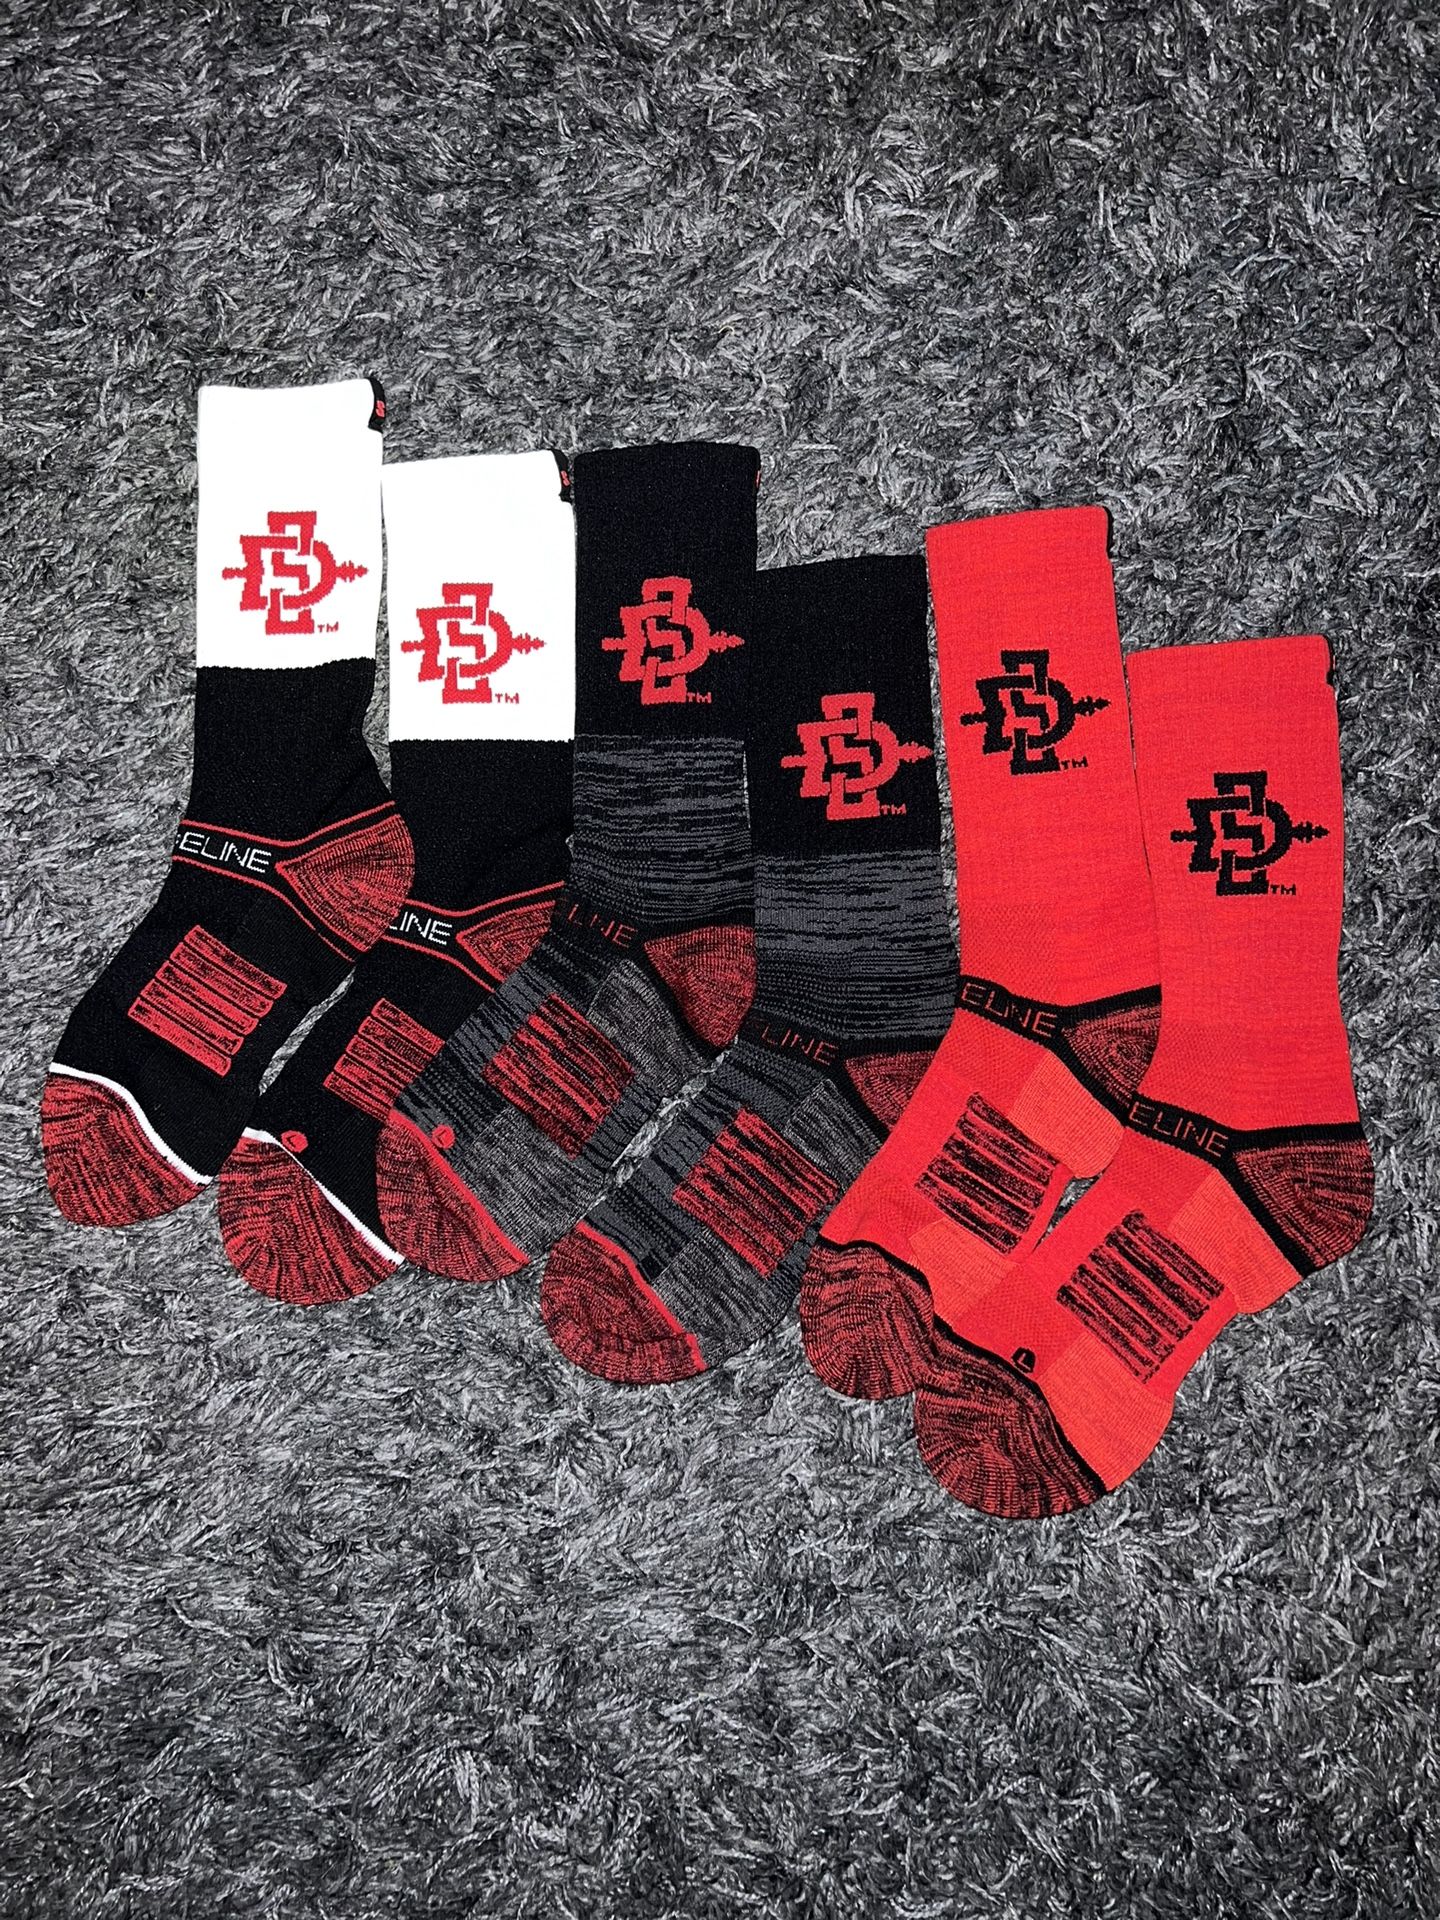 SDSU crew socks